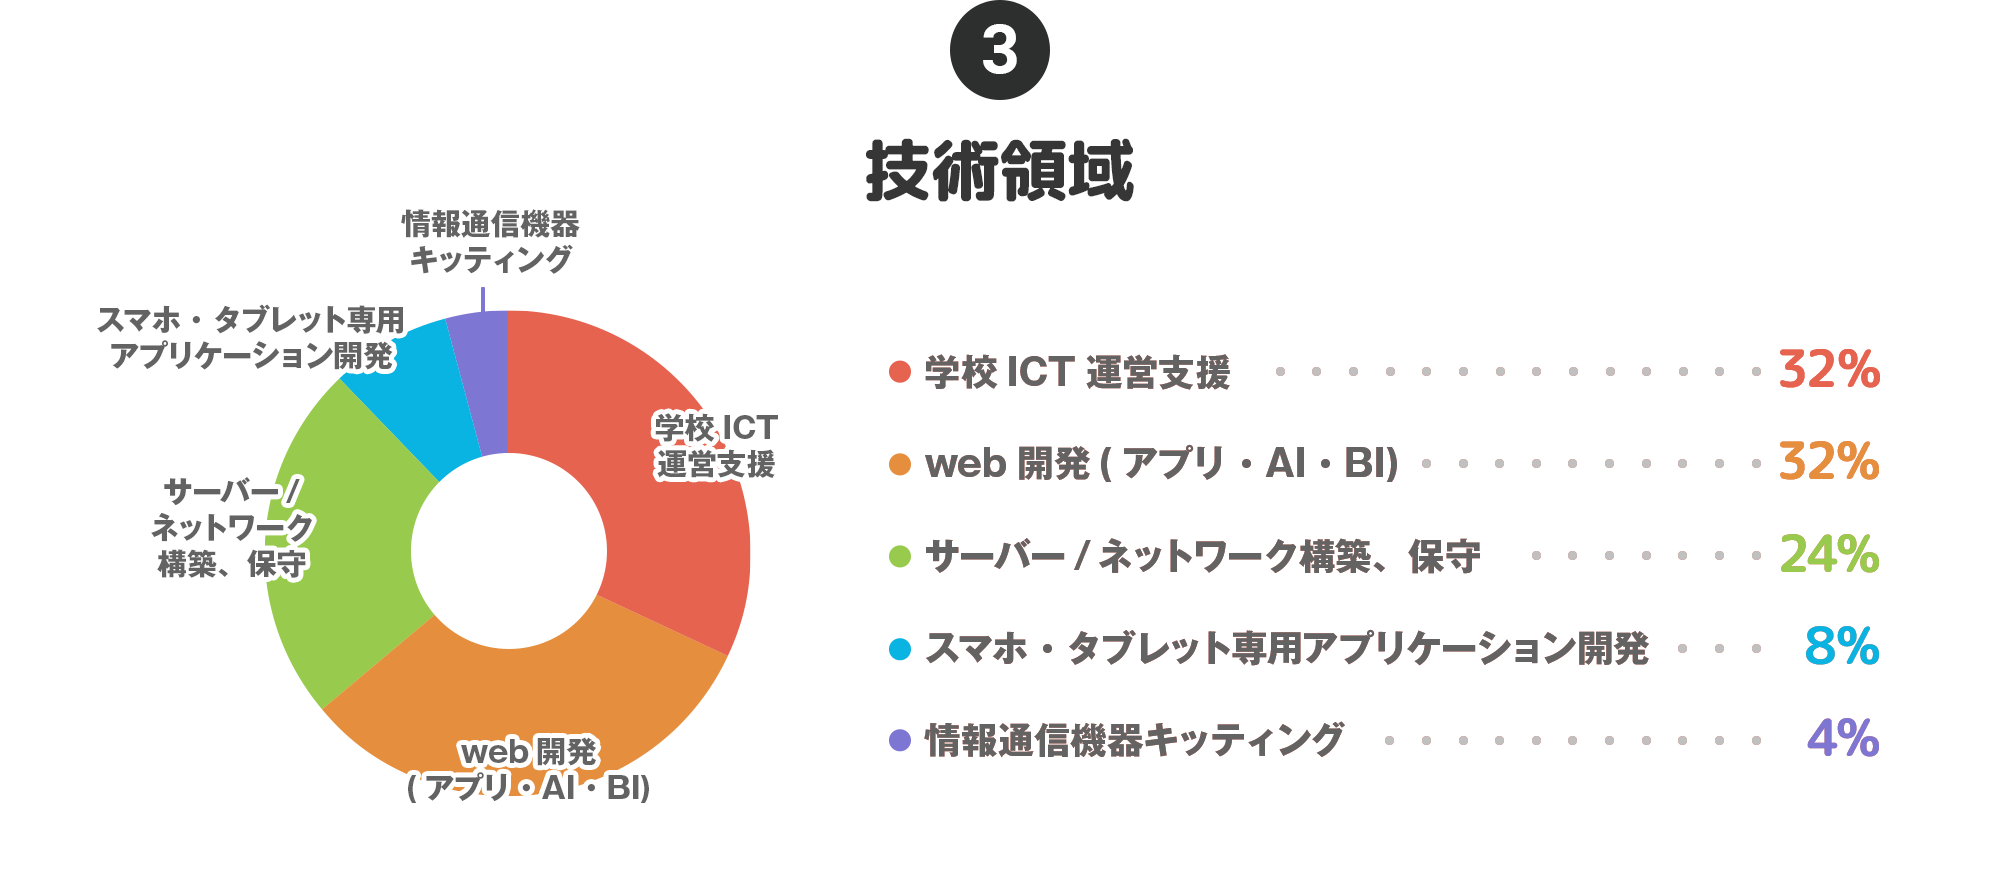 ③技術領域…学校ICT運営支援：32%、web開発(アプリ・AI・BI)：32%、サーバー/ネットワーク構築、保守：24%、スマホ・タブレット専用アプリケーション開発：8%、情報通信機器キッティング：4%